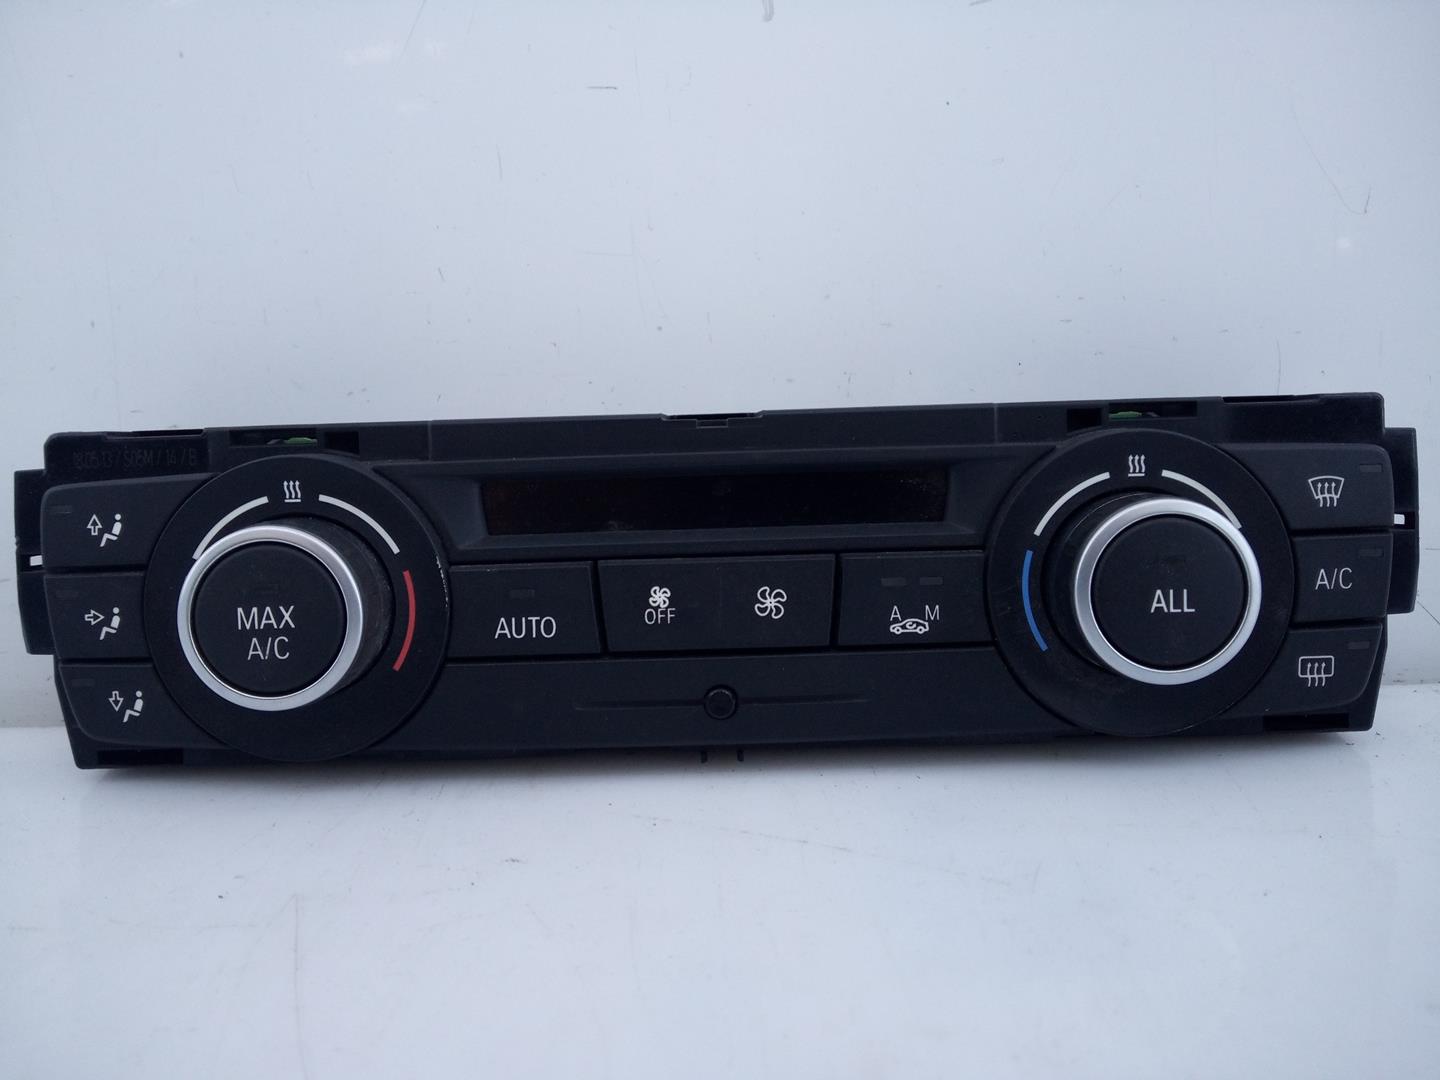 BMW X1 E84 (2009-2015) Klimato kontrolės (klimos) valdymas 6411929226302, BH929226302, E3-A2-22-1 23278902